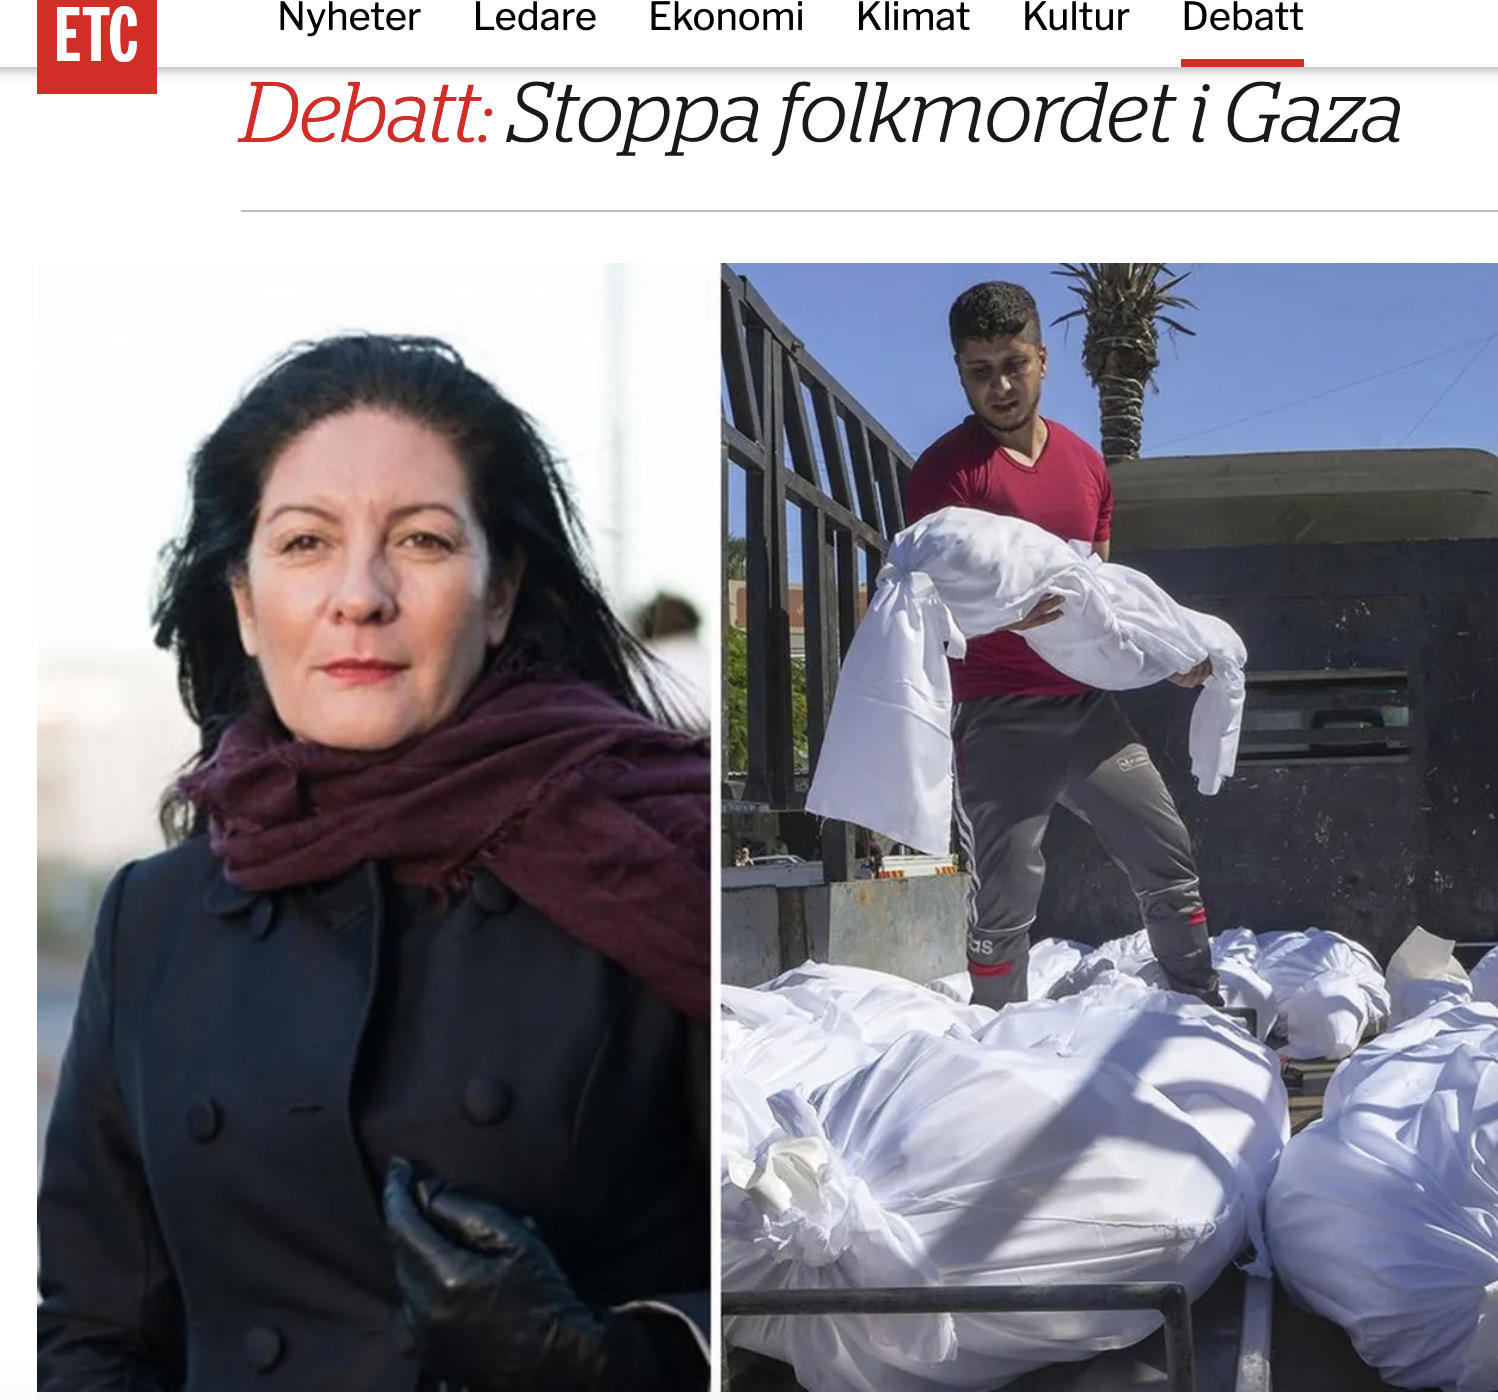 ETC Debatt: Stoppa folkmordet i Gaza